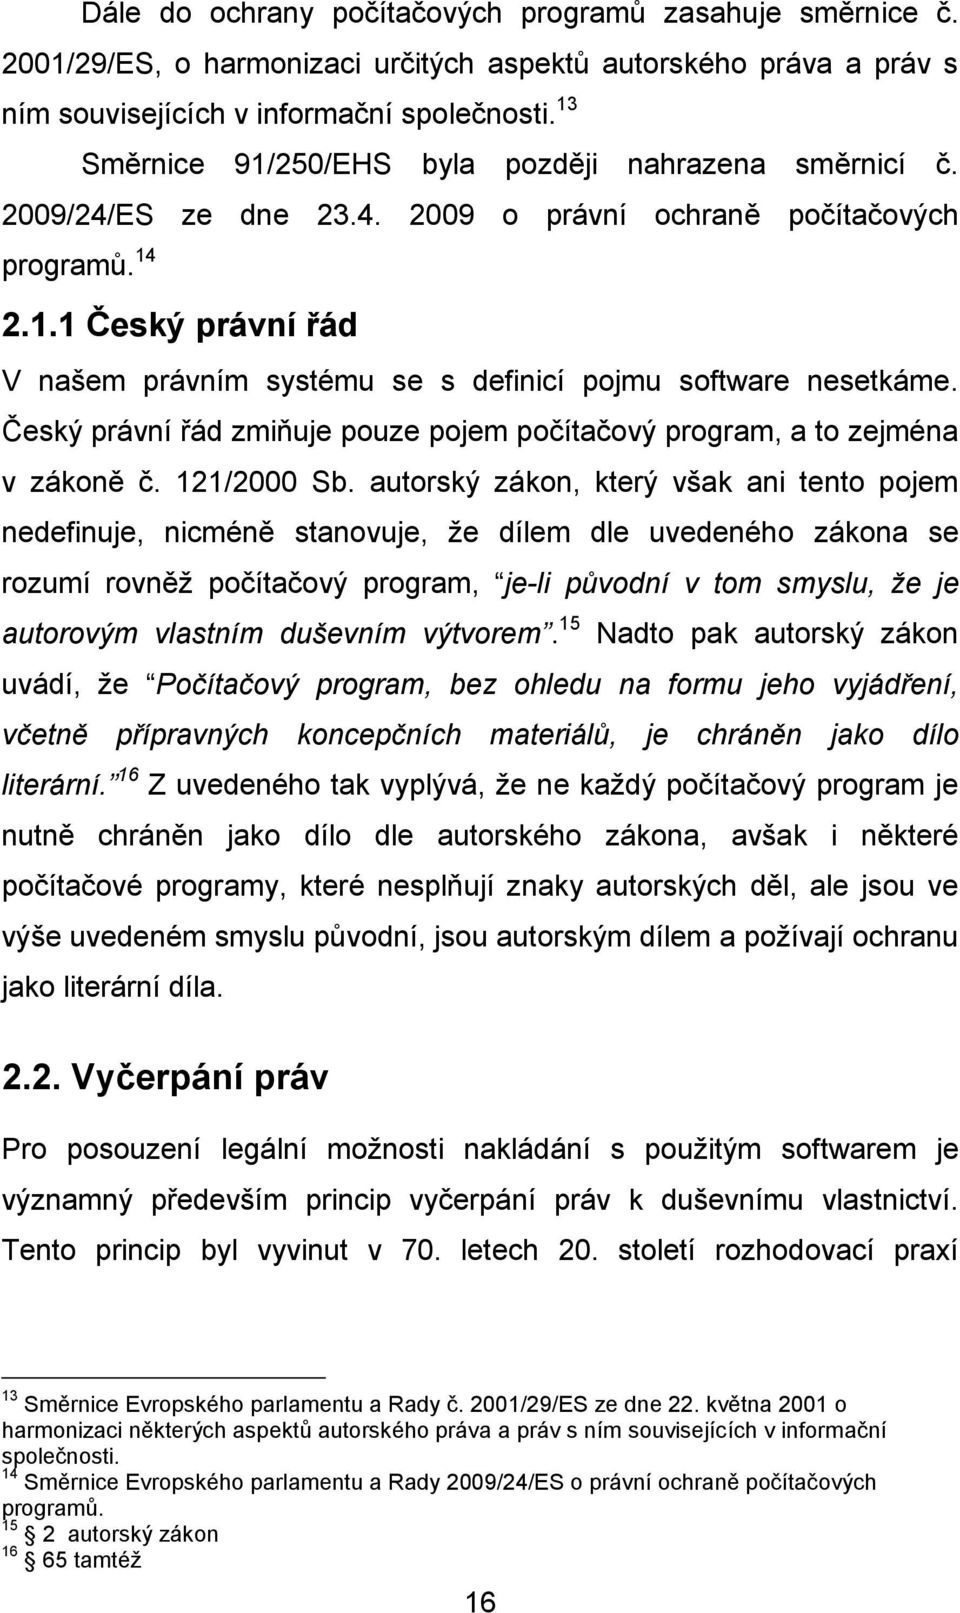 Český právní řád zmiňuje pouze pojem počítačový program, a to zejména v zákoně č. 121/2000 Sb.